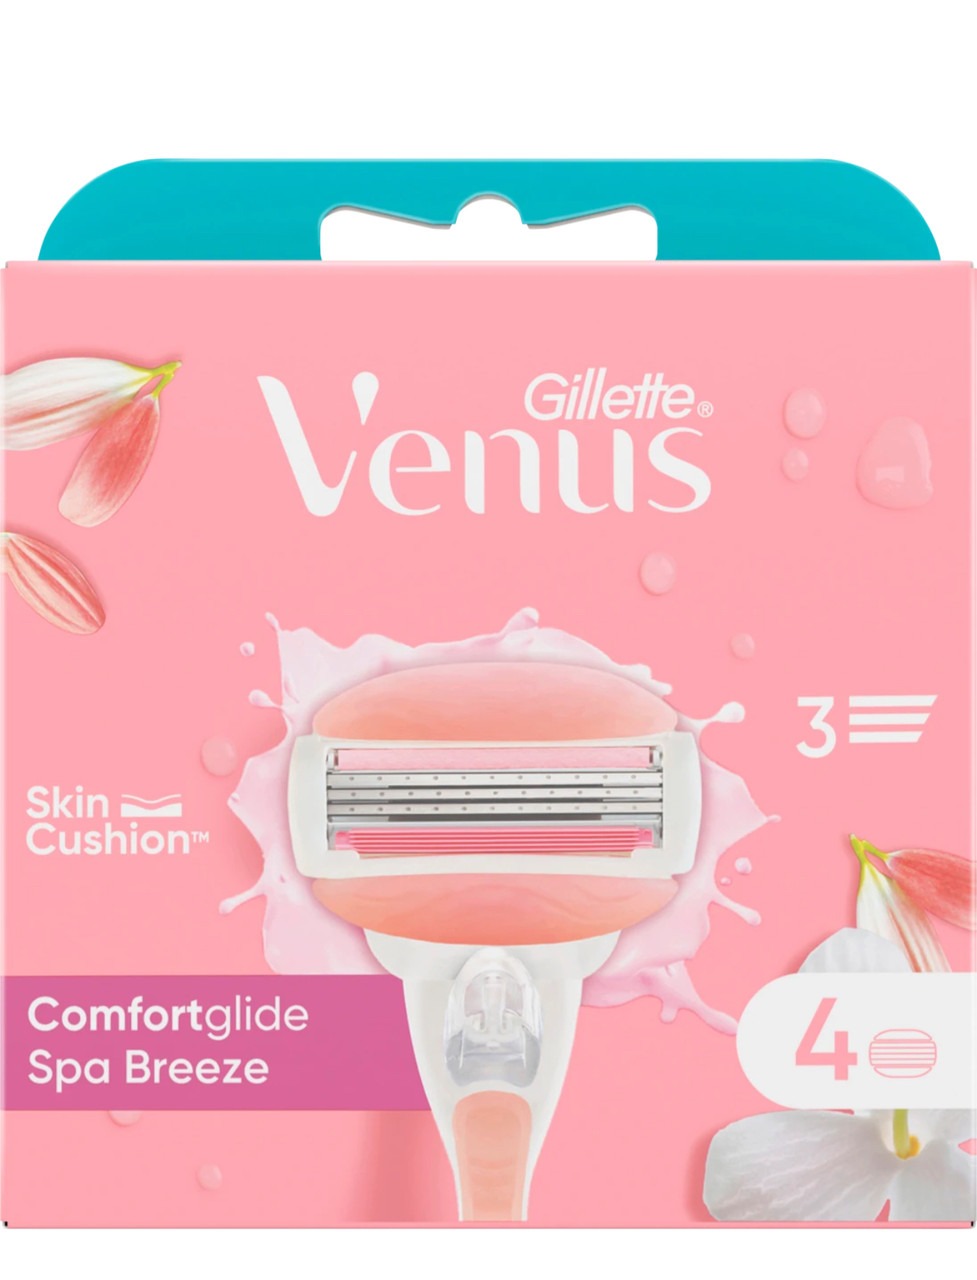 Сменные кассеты для бритья Gillette Venus Comfort Glide Spa Breeze 4 шт. - фото 1